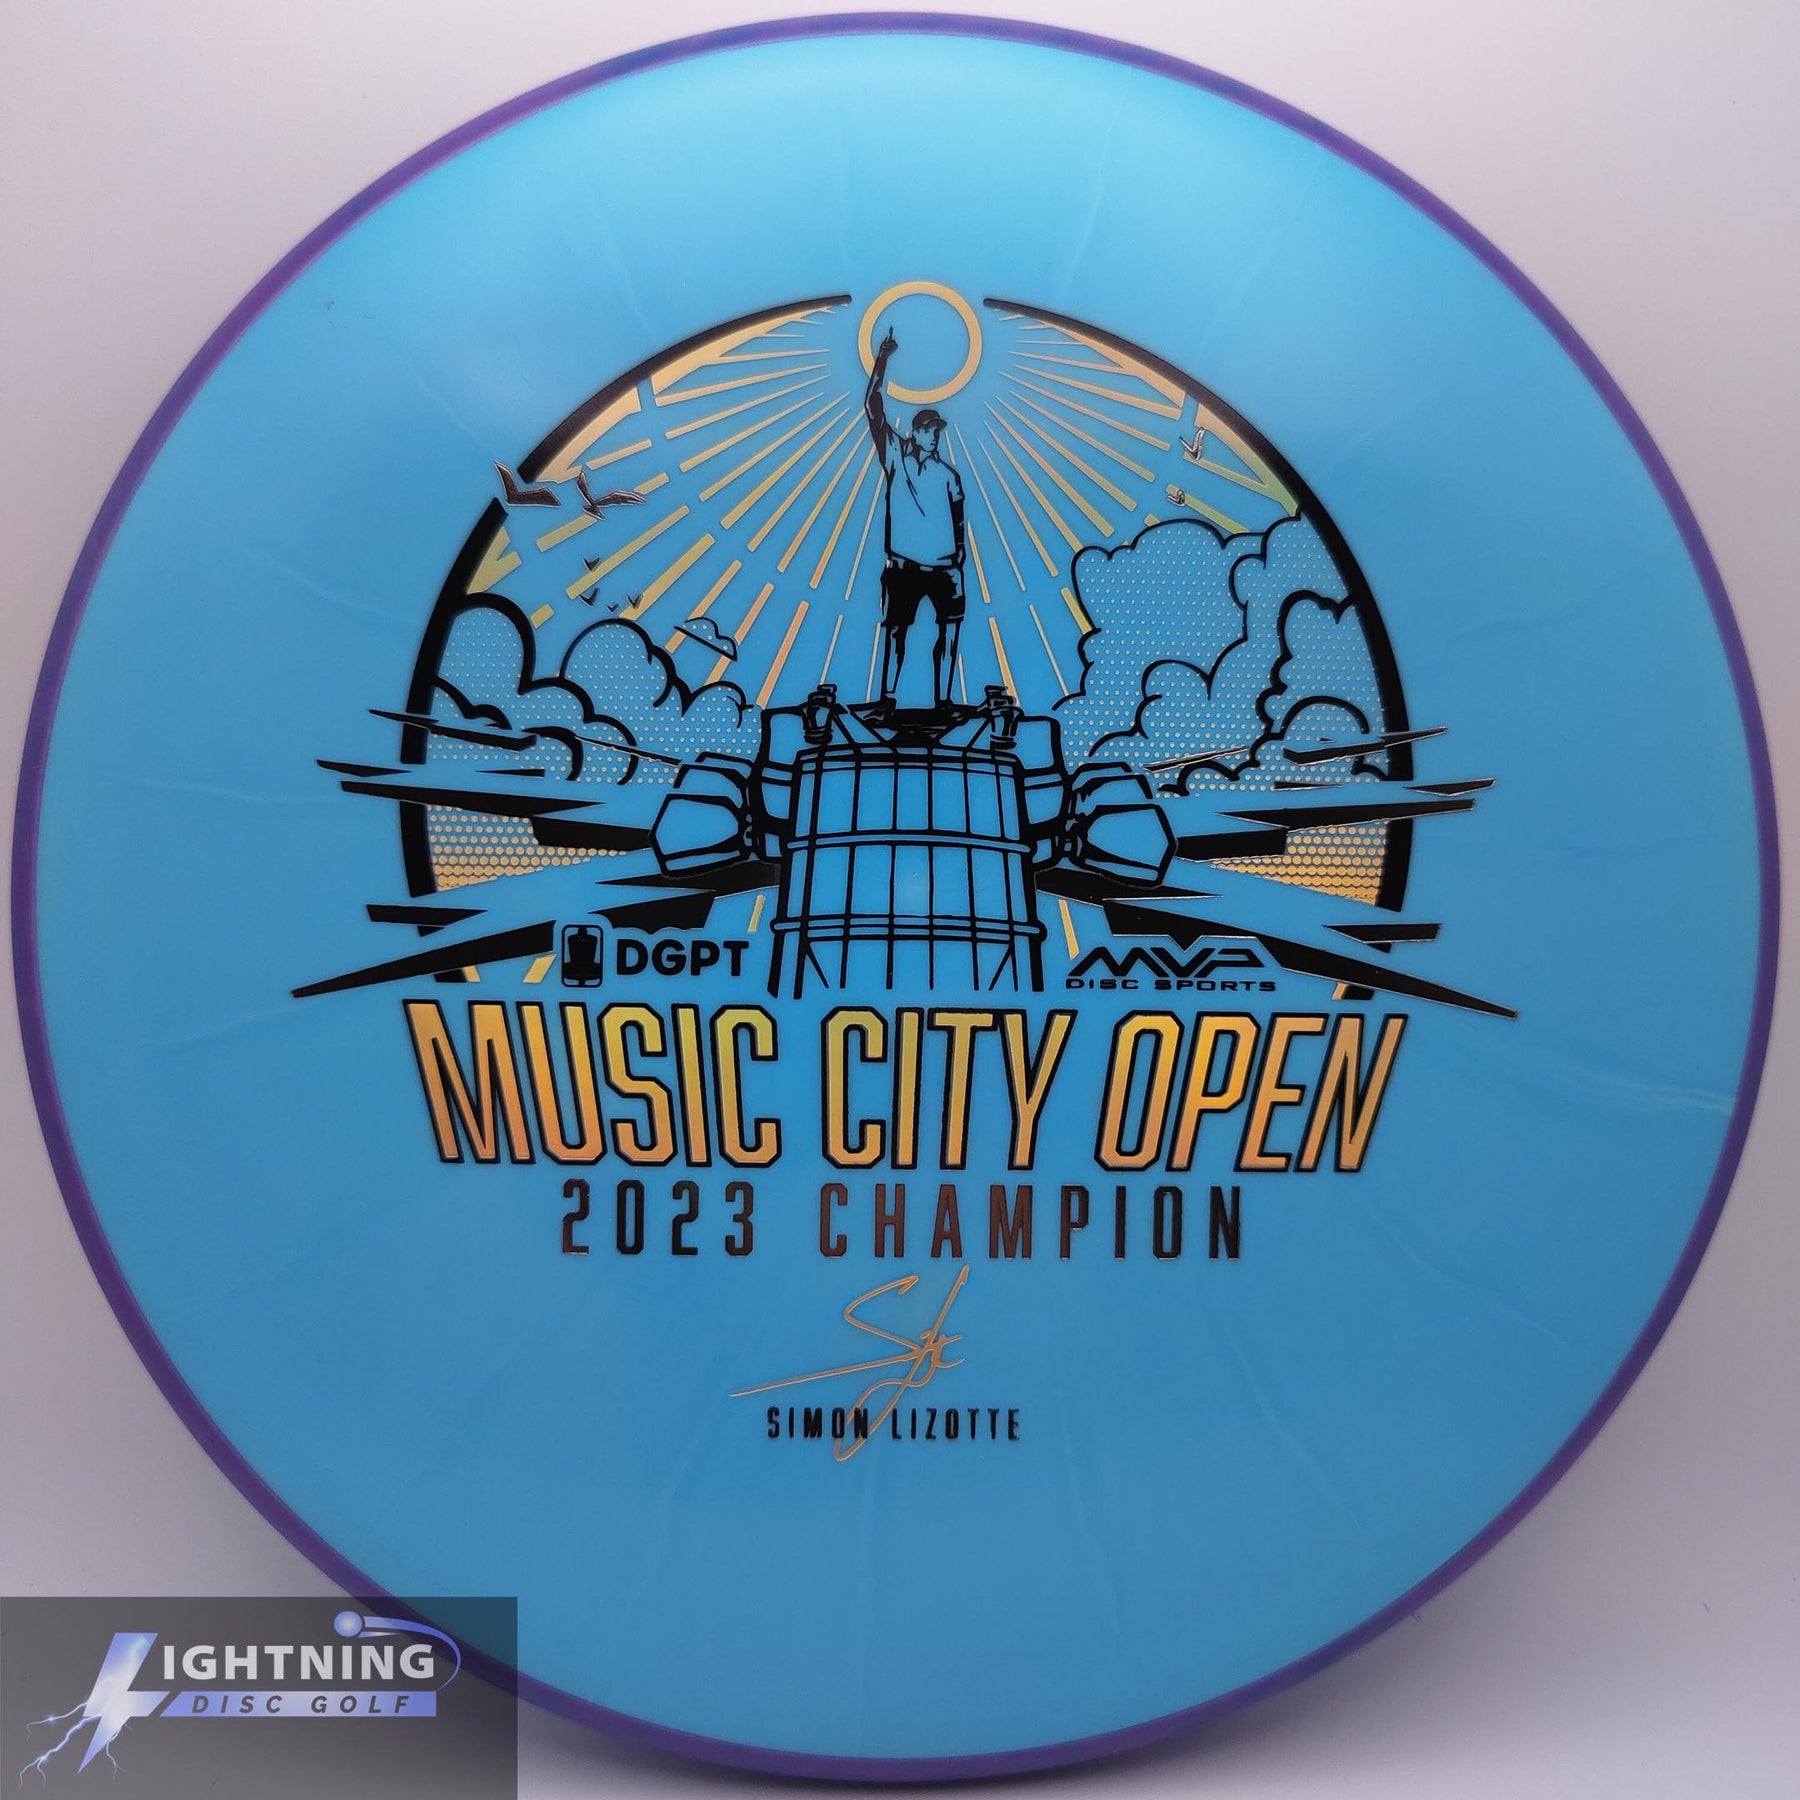 Axiom Fission Proxy - Simon Lizotte Music City Open Championship Edition